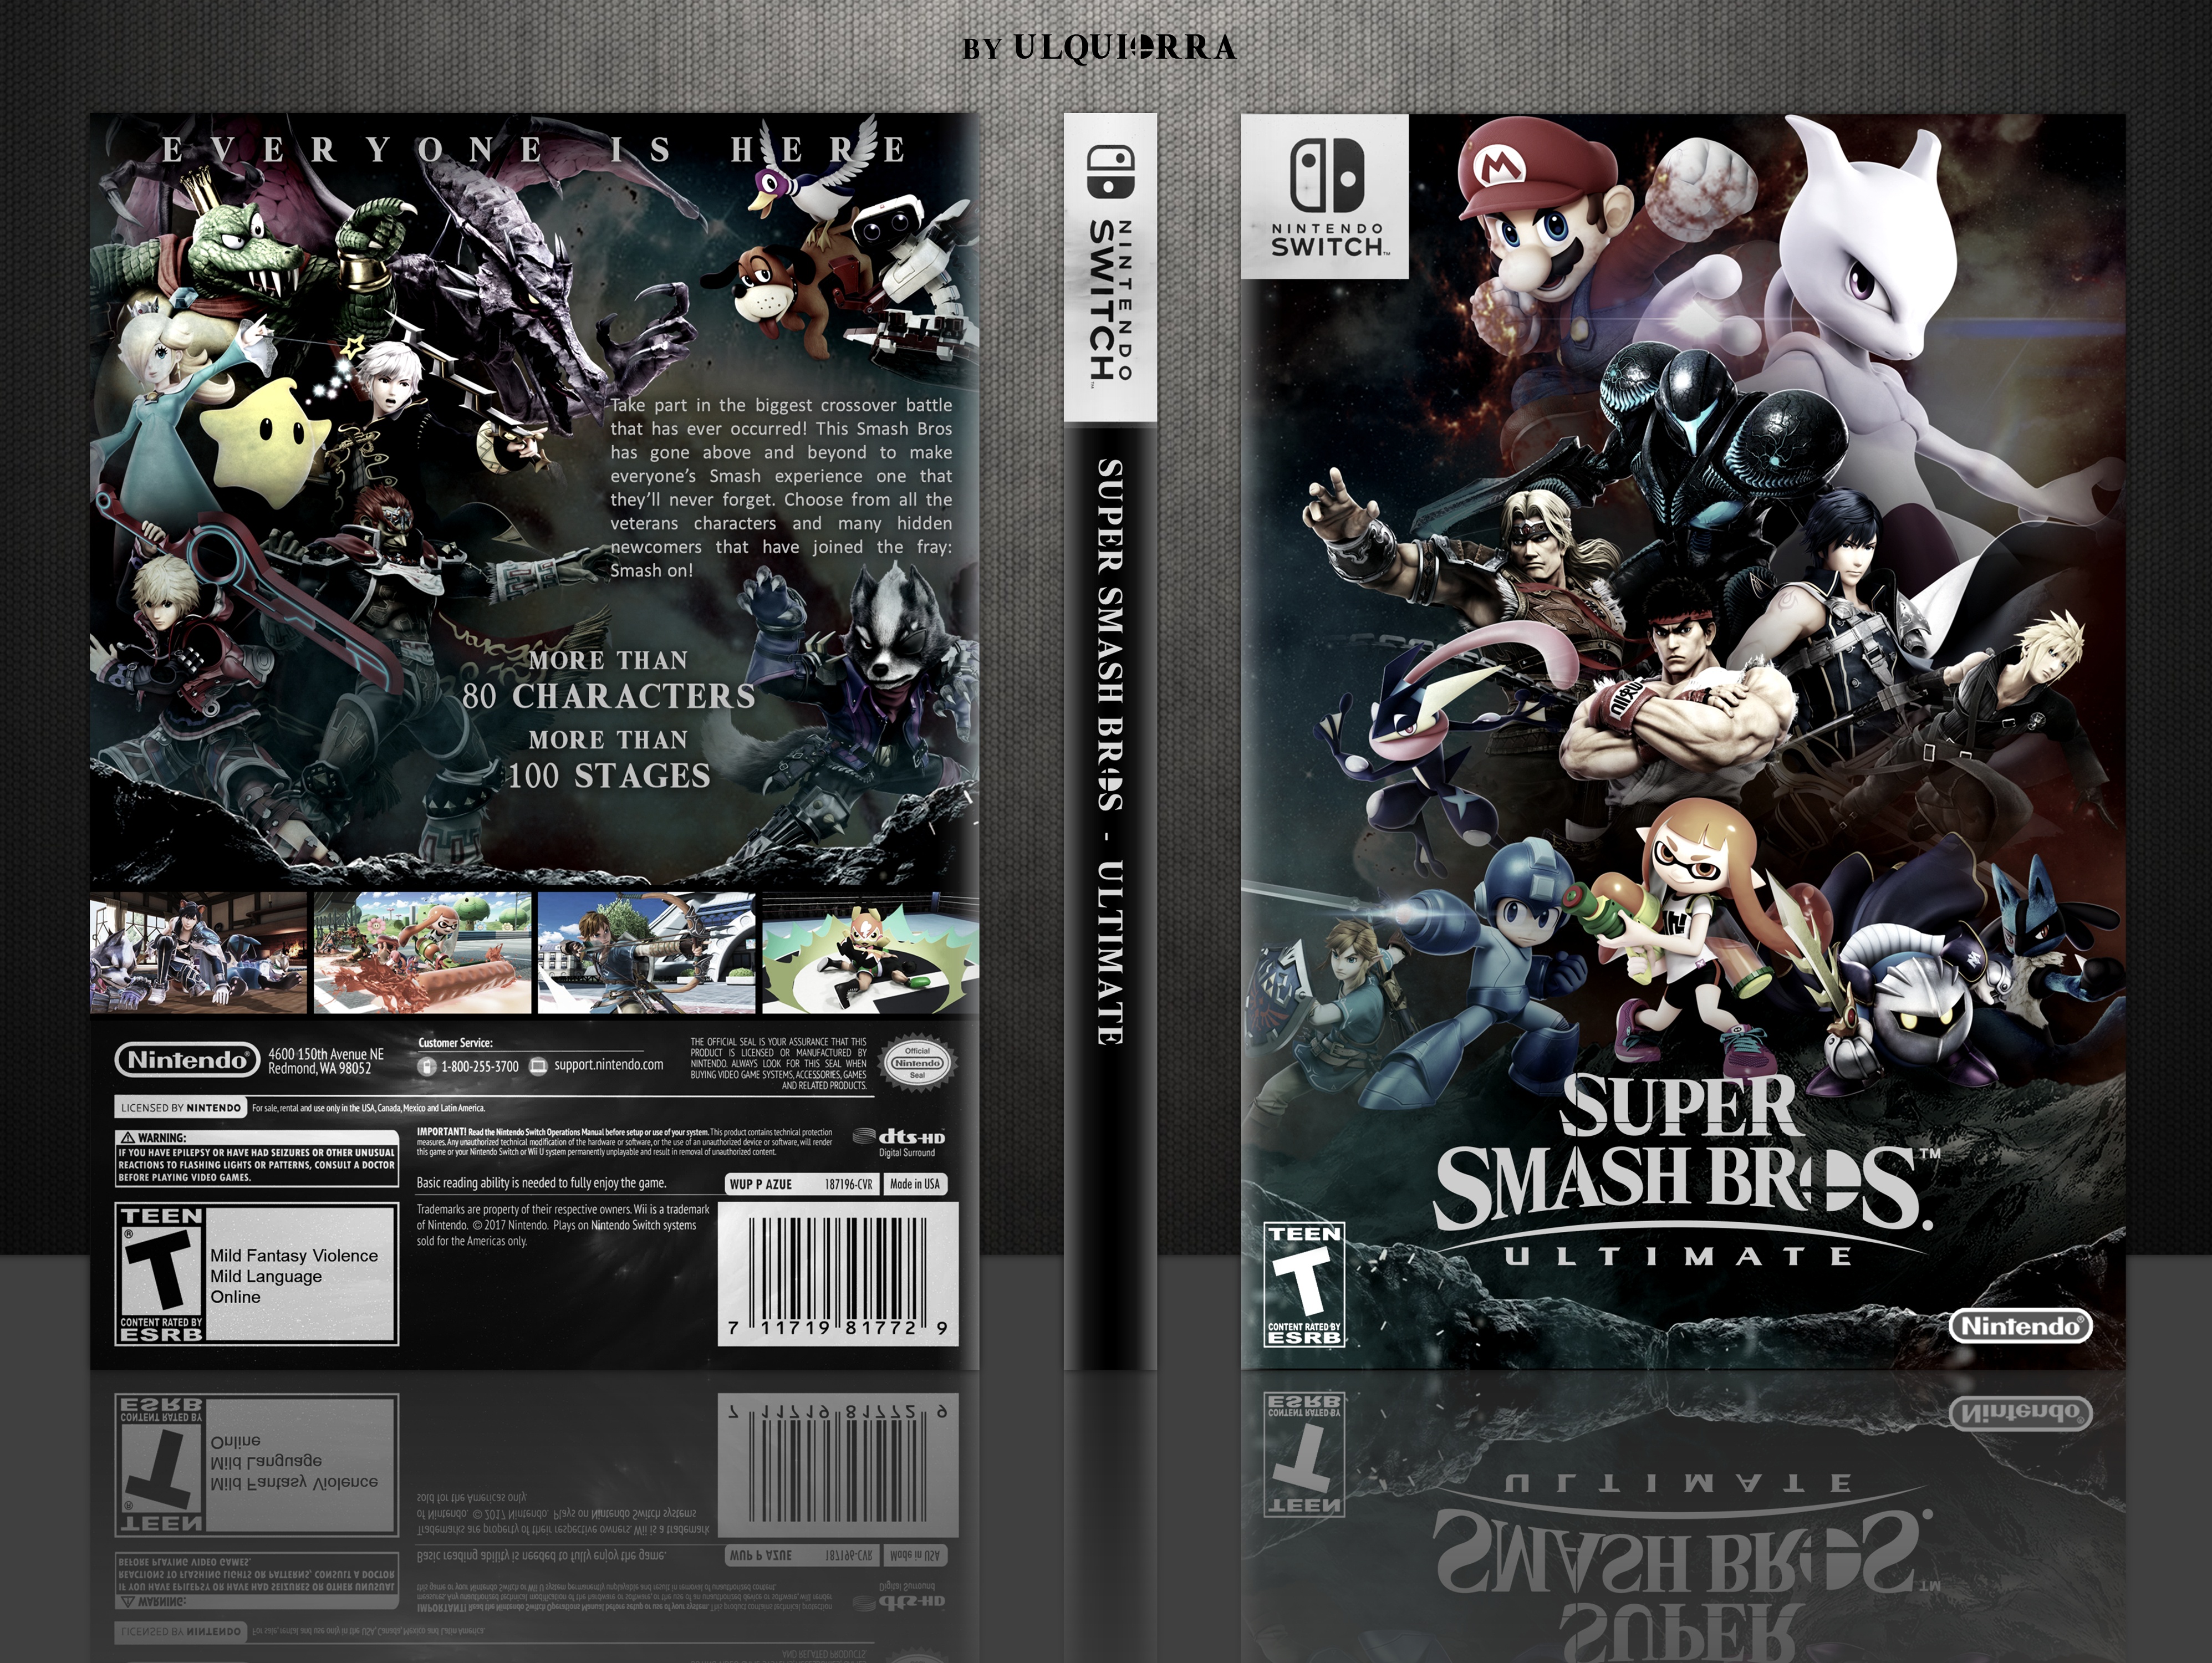 Super Smash Bros Ultimate box cover